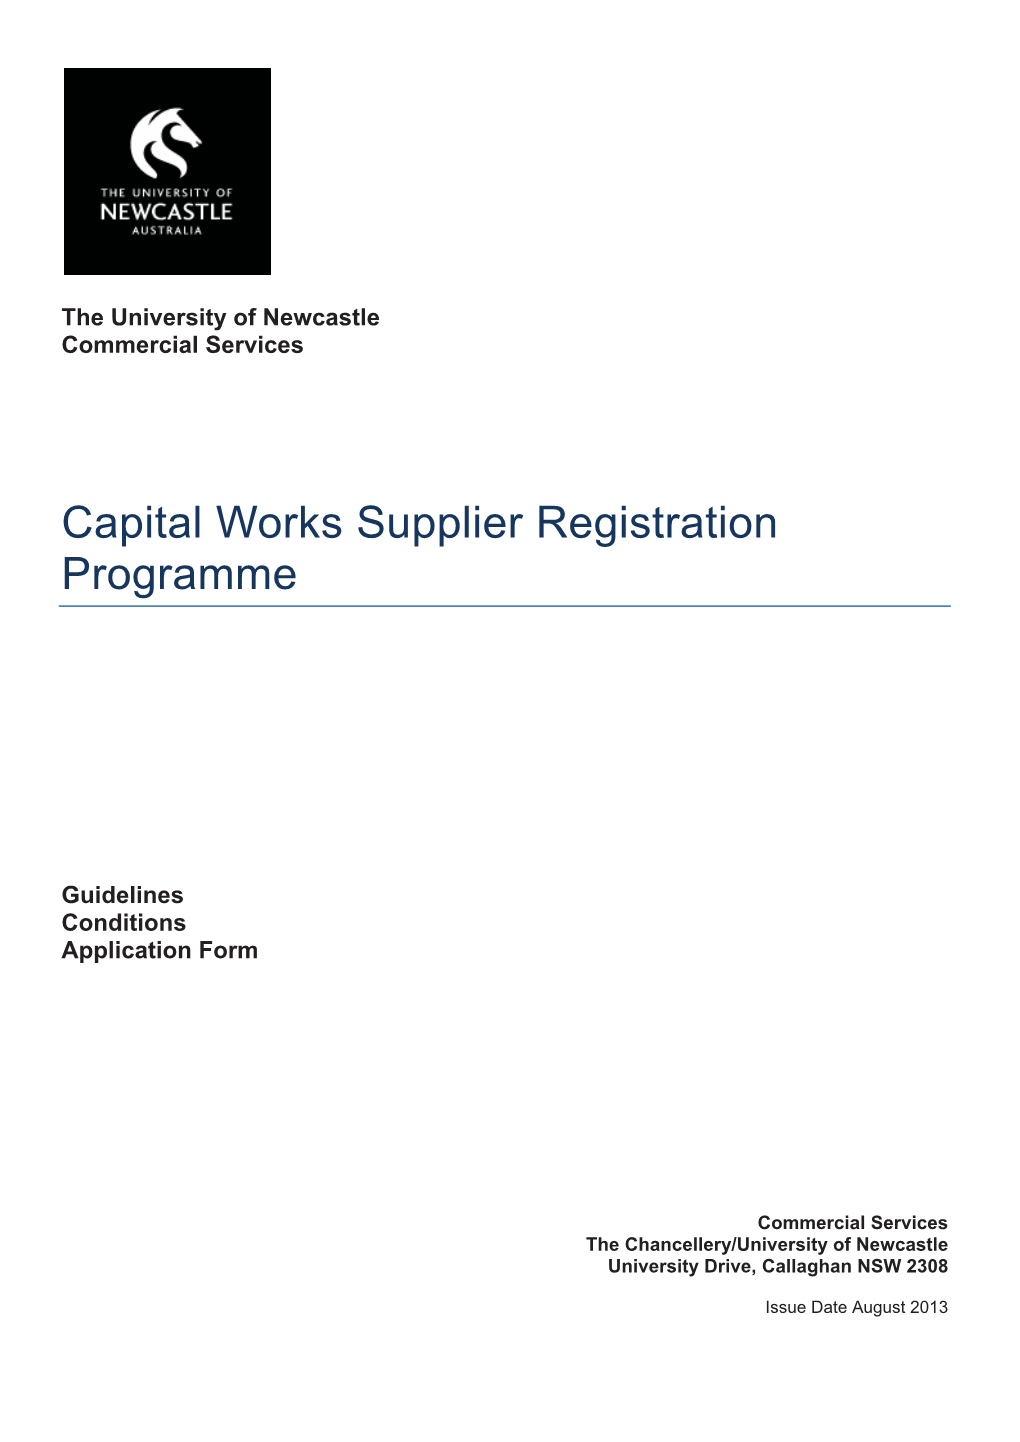 Capital Works Supplier Registration Programme